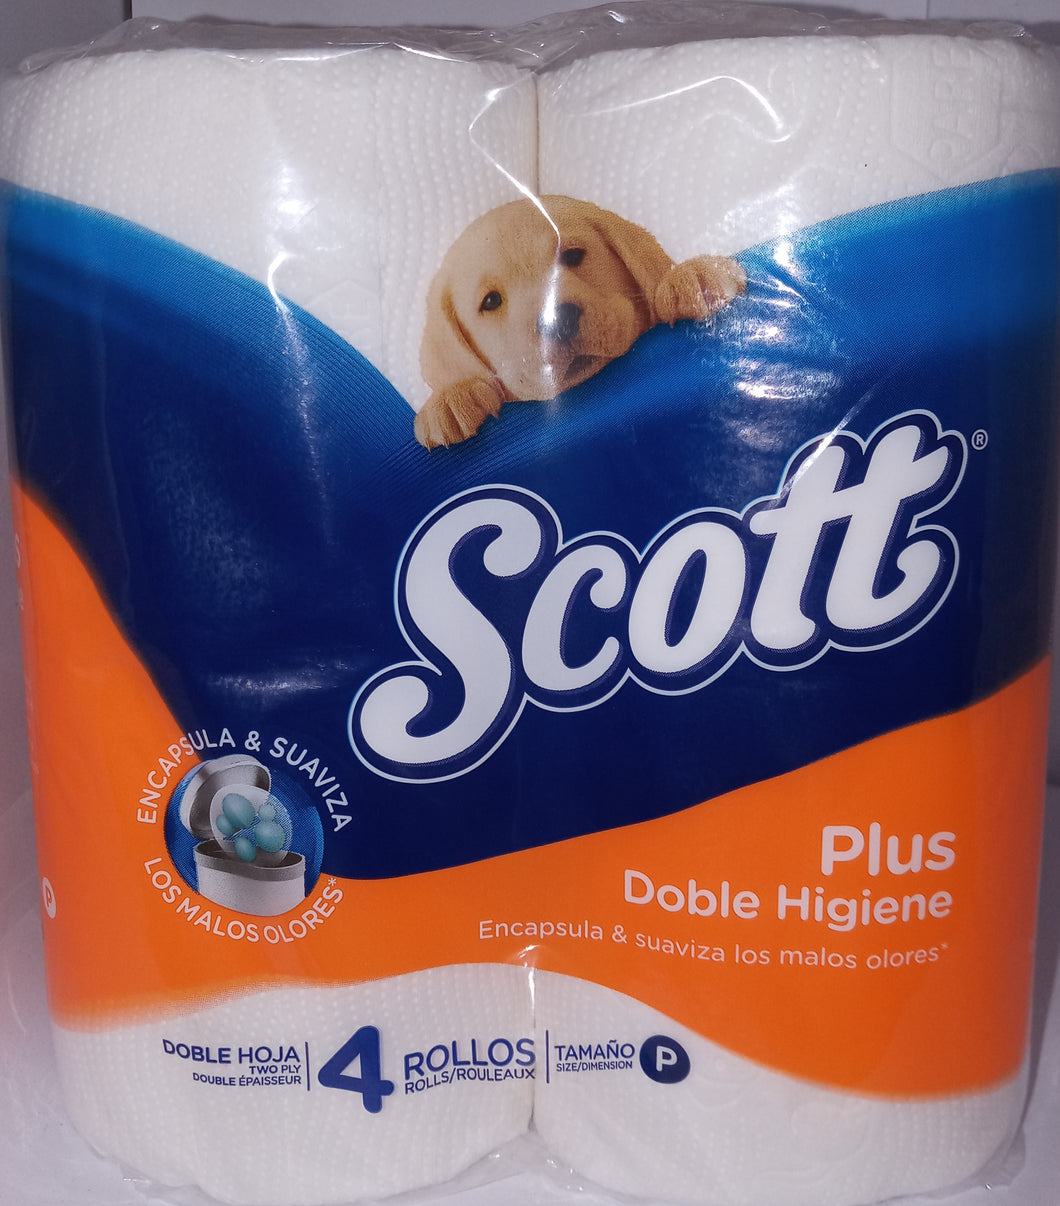 Papel higienico Scott plus doble higiene 4 rollos